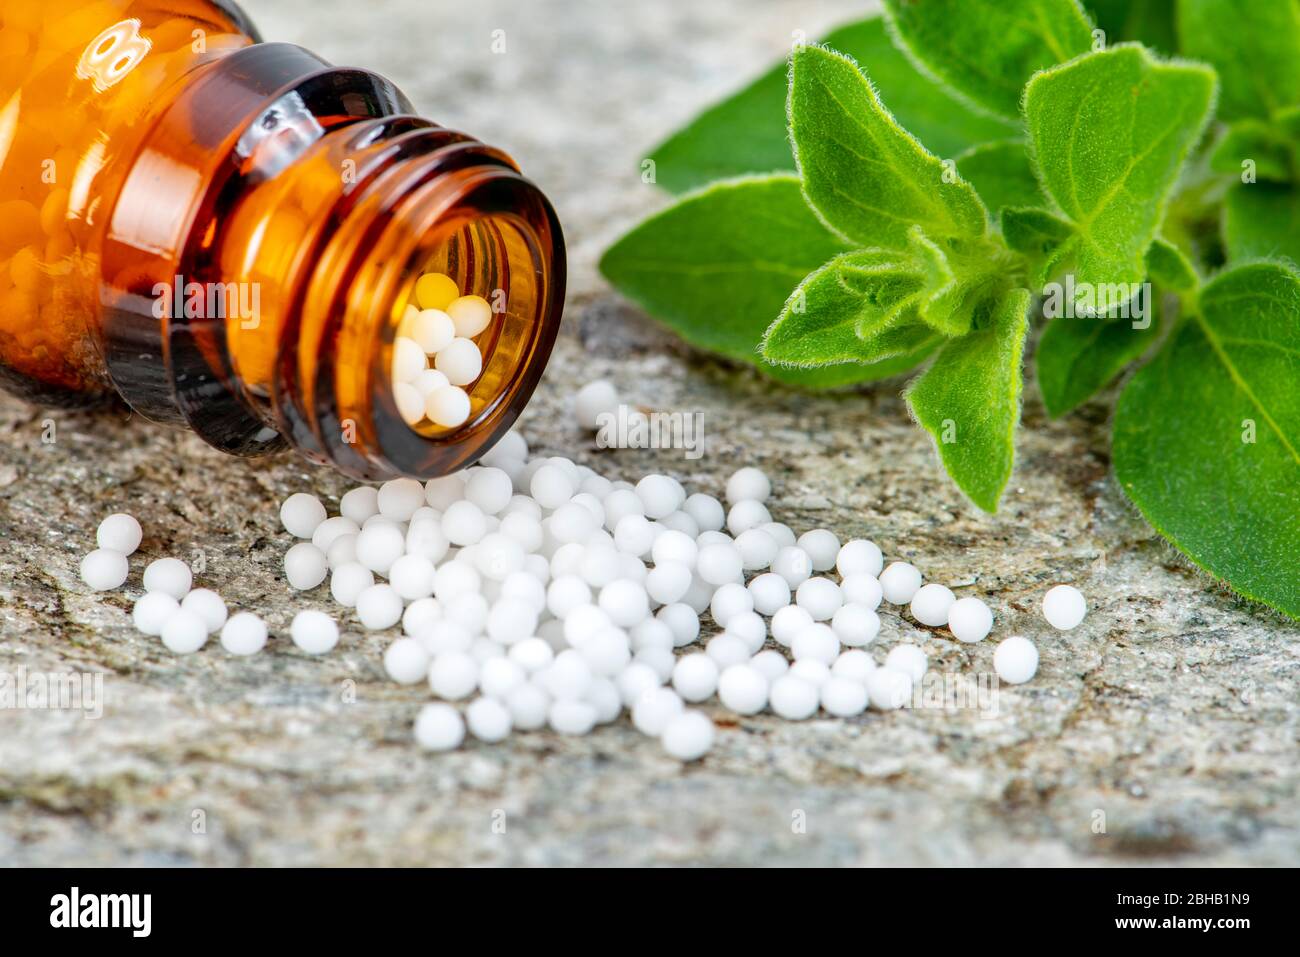 Alternativmedizin und Naturmedizin mit homöopathischen Pillen Stock Photo